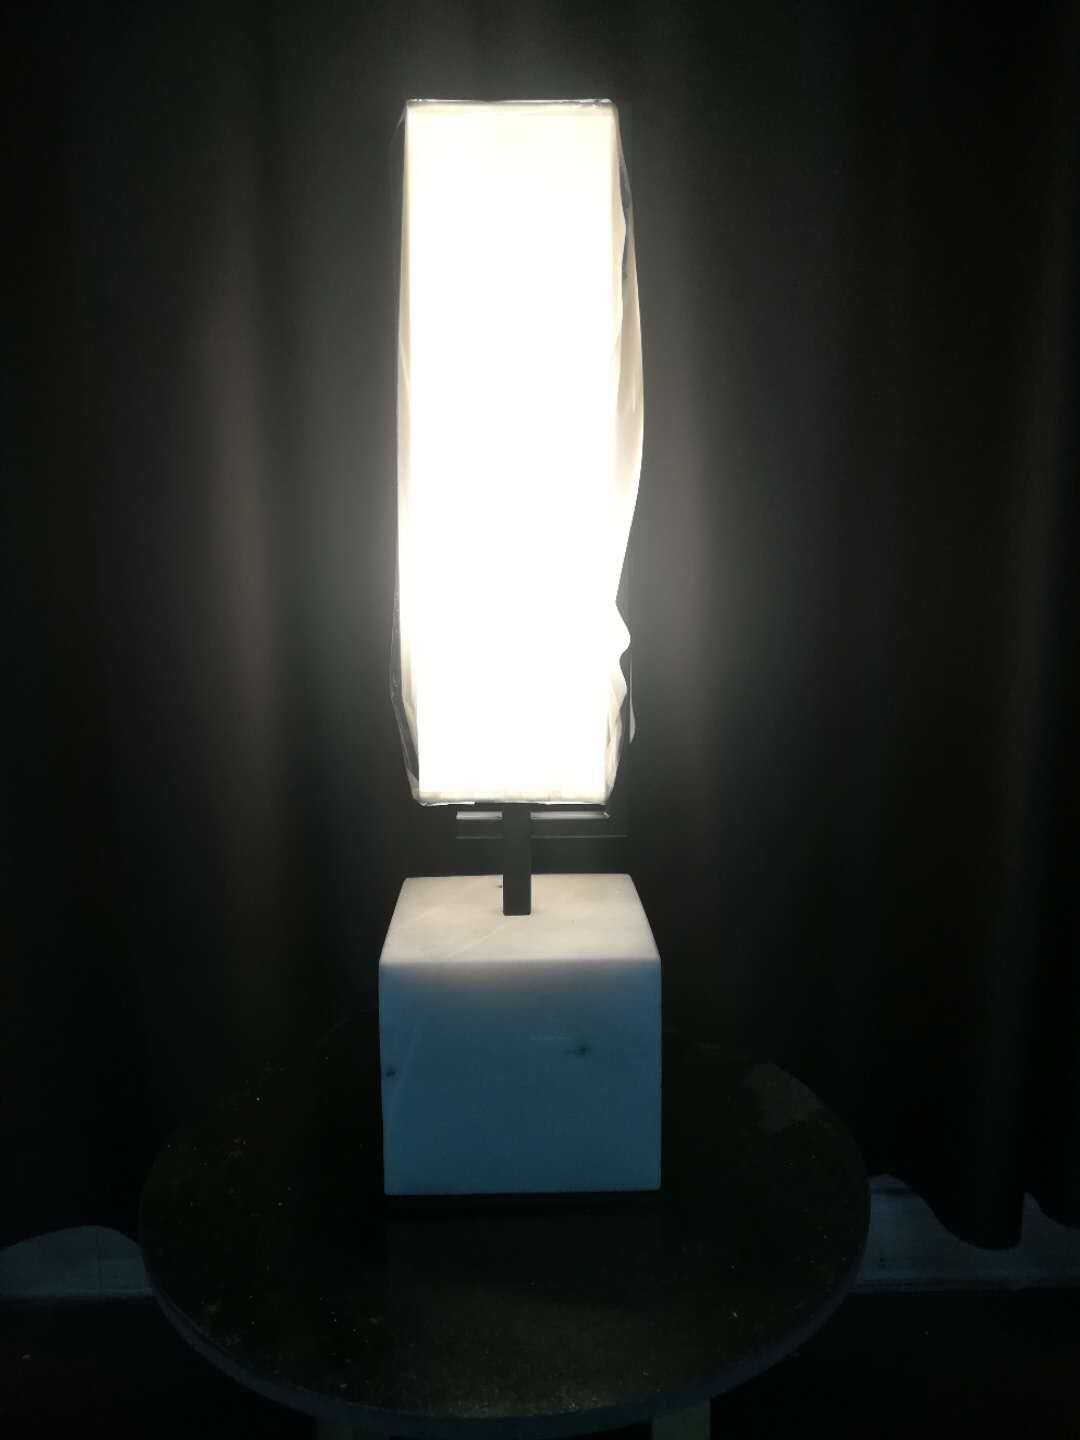 Мраморный современный прикроватный домашний настольный светильник (KAT6105)